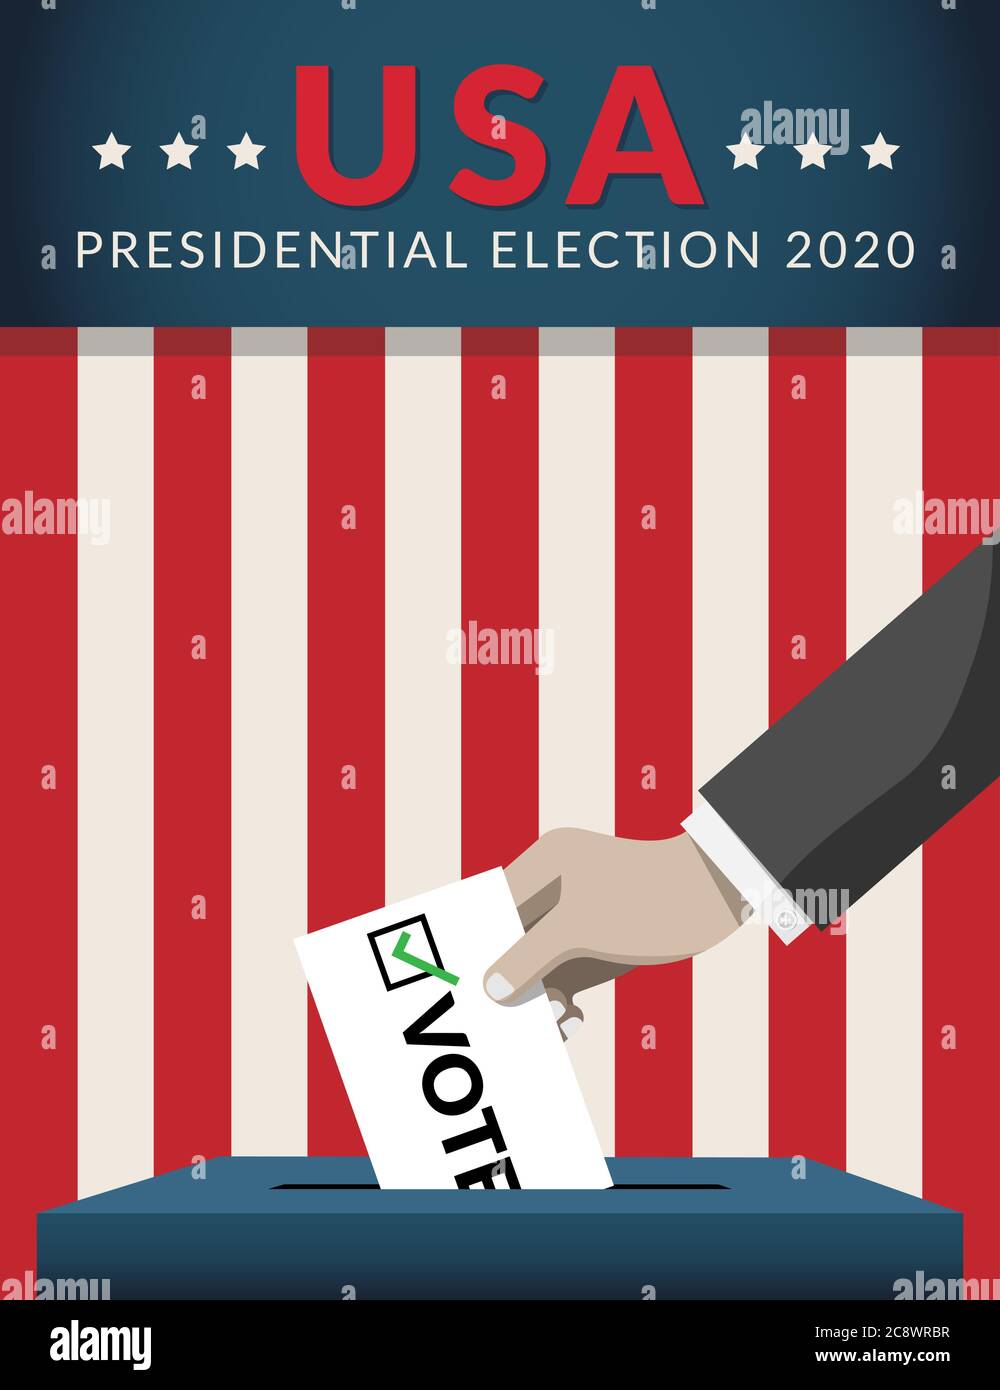 US-Präsidentschaftswahl 2020 Wahlkampfkonzept. Hand Putting Wahlpapier in der Wahlurne mit amerikanischer Flagge auf Hintergrund. Präsidentschaftswahl Stock Vektor